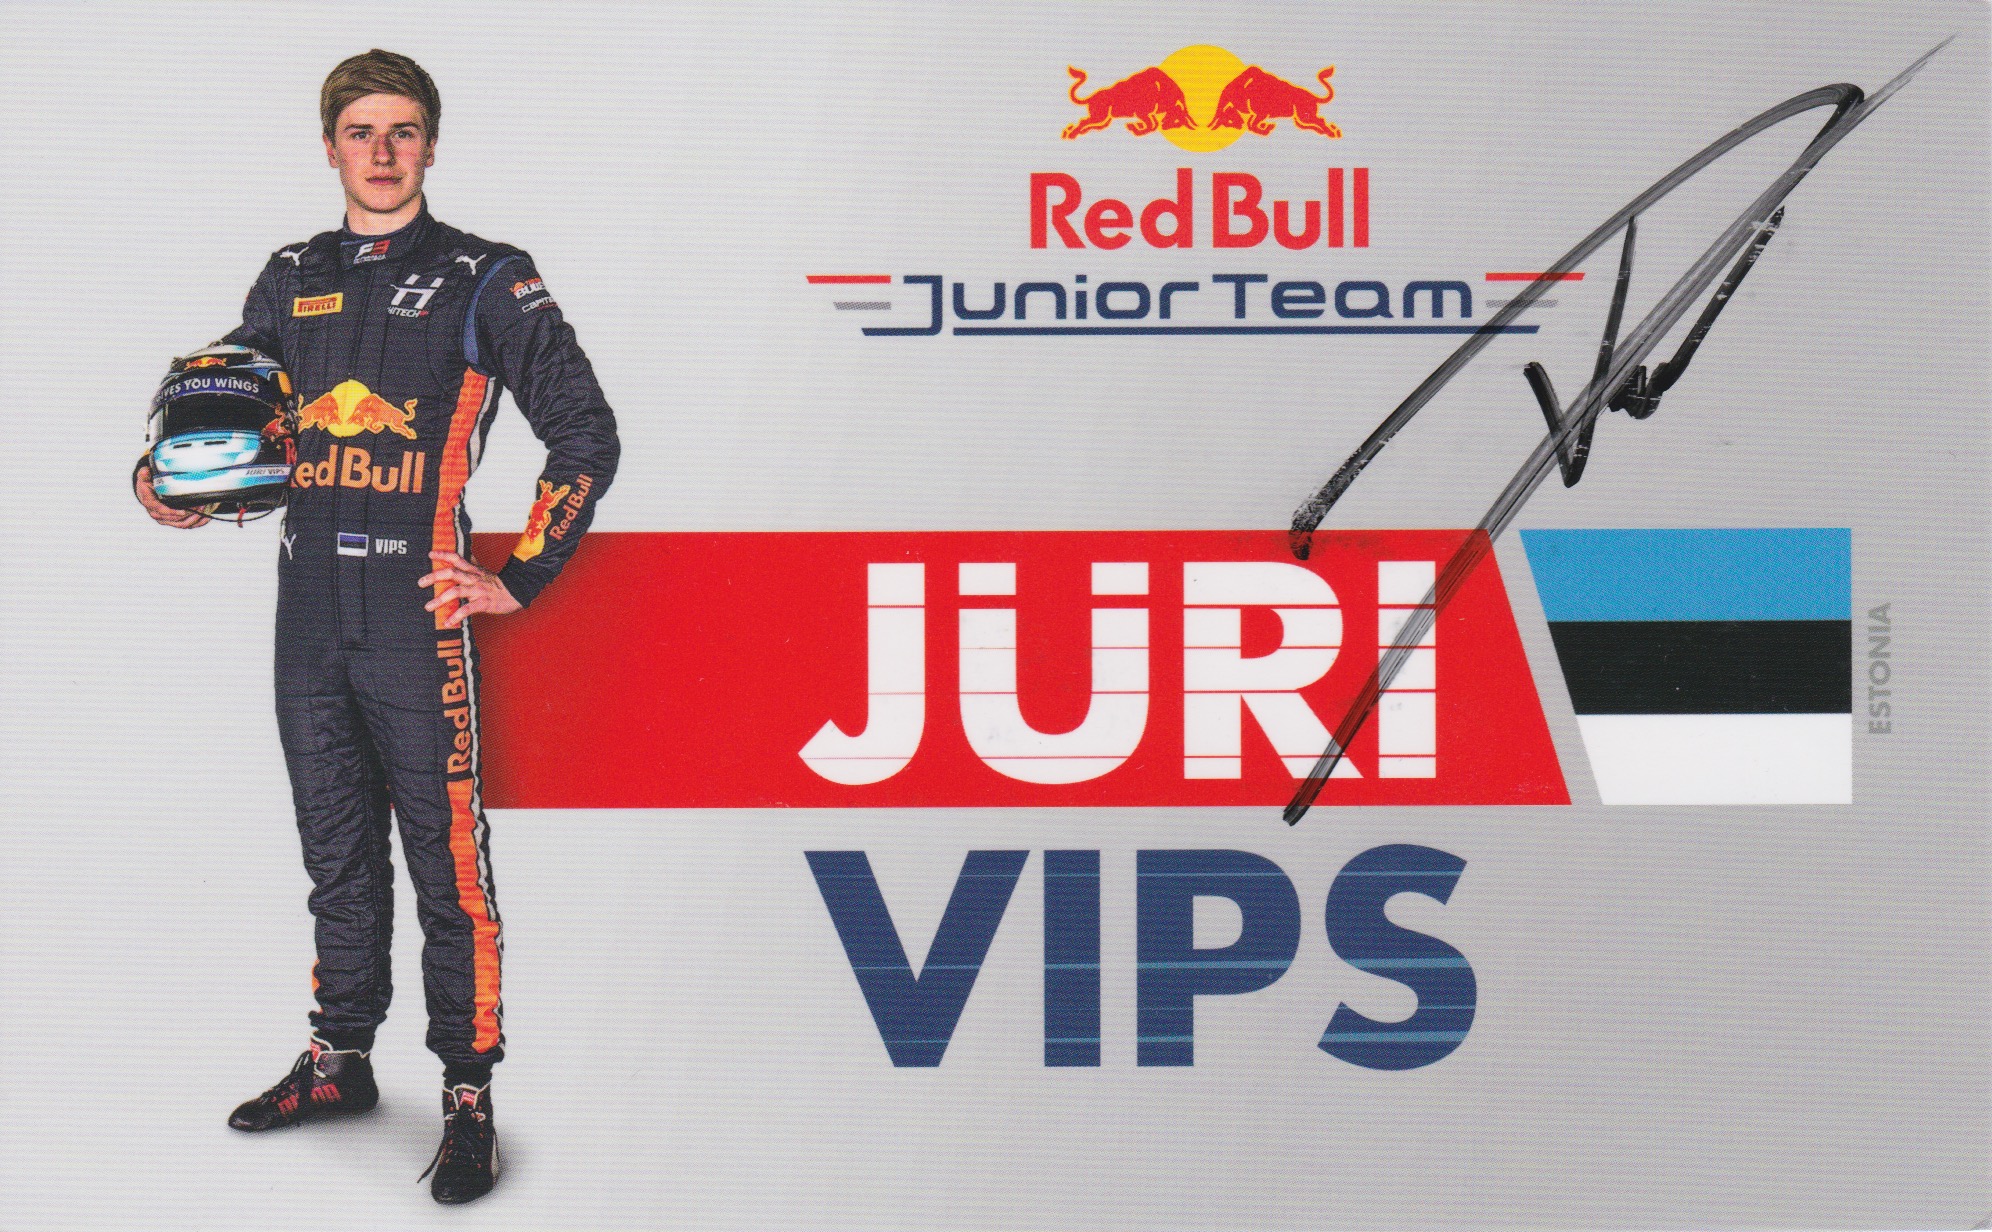 Jüri Vips Red Bull Junior Team 2019